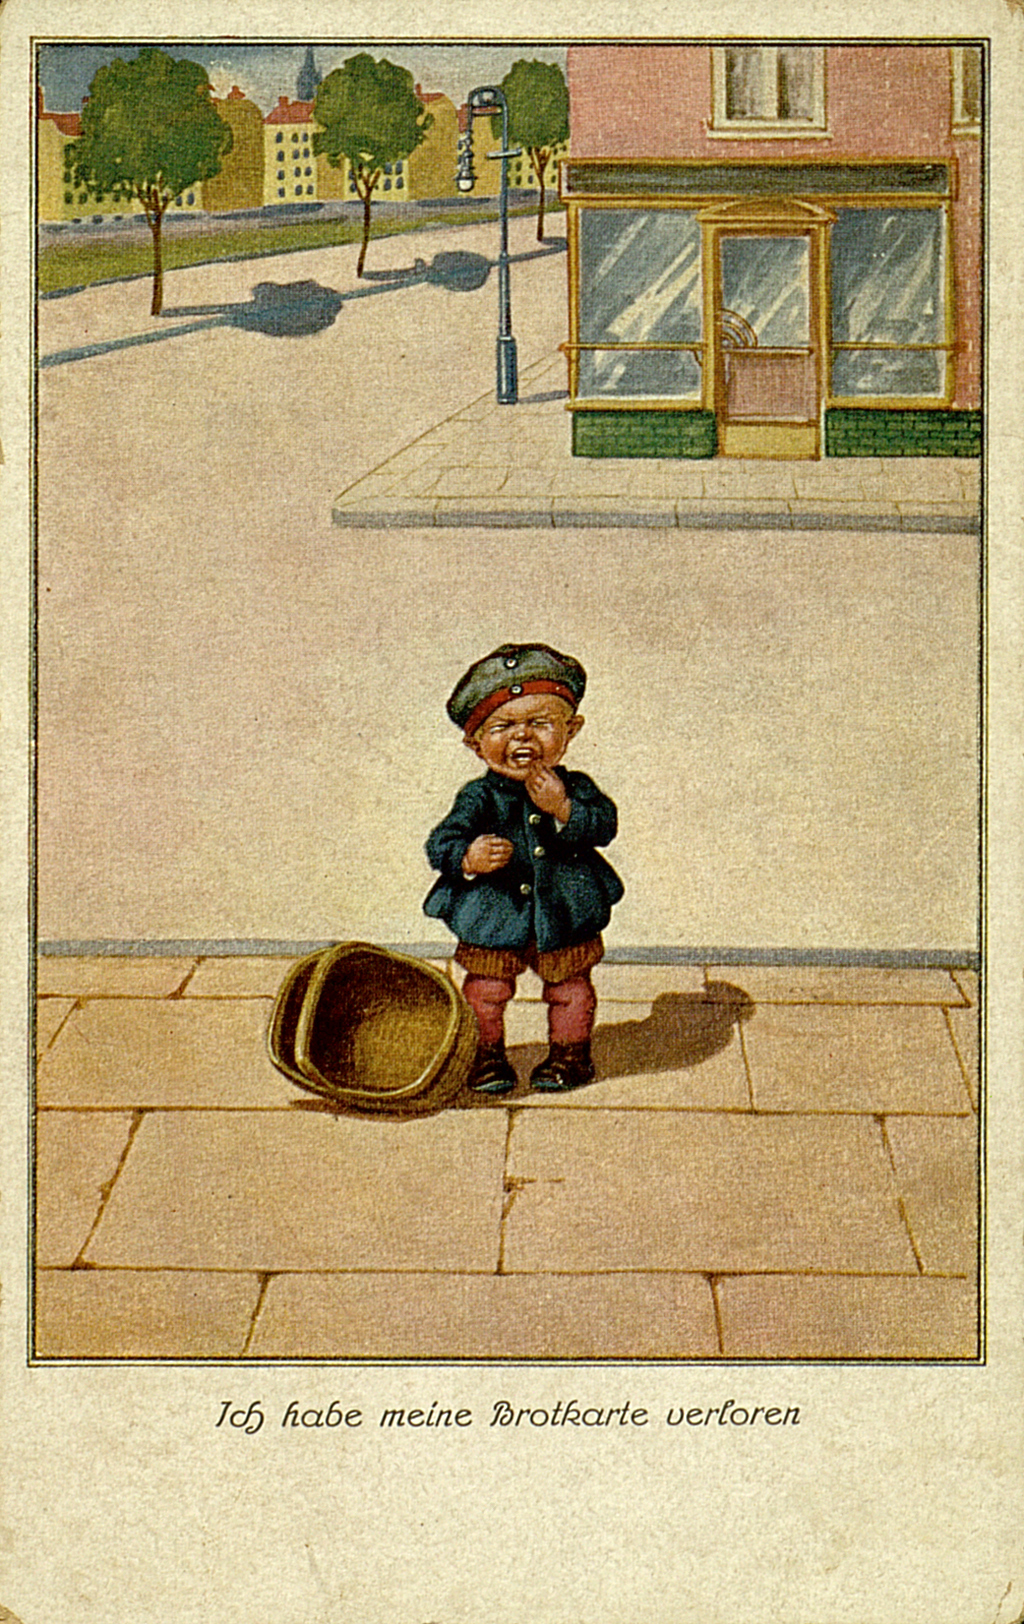 Ich habe meine Brotkarte verloren. Weinender Junge mit leerem Brotkorb, ganz allein auf der Straße. Ansichtskarte. Künstler unbekannt.